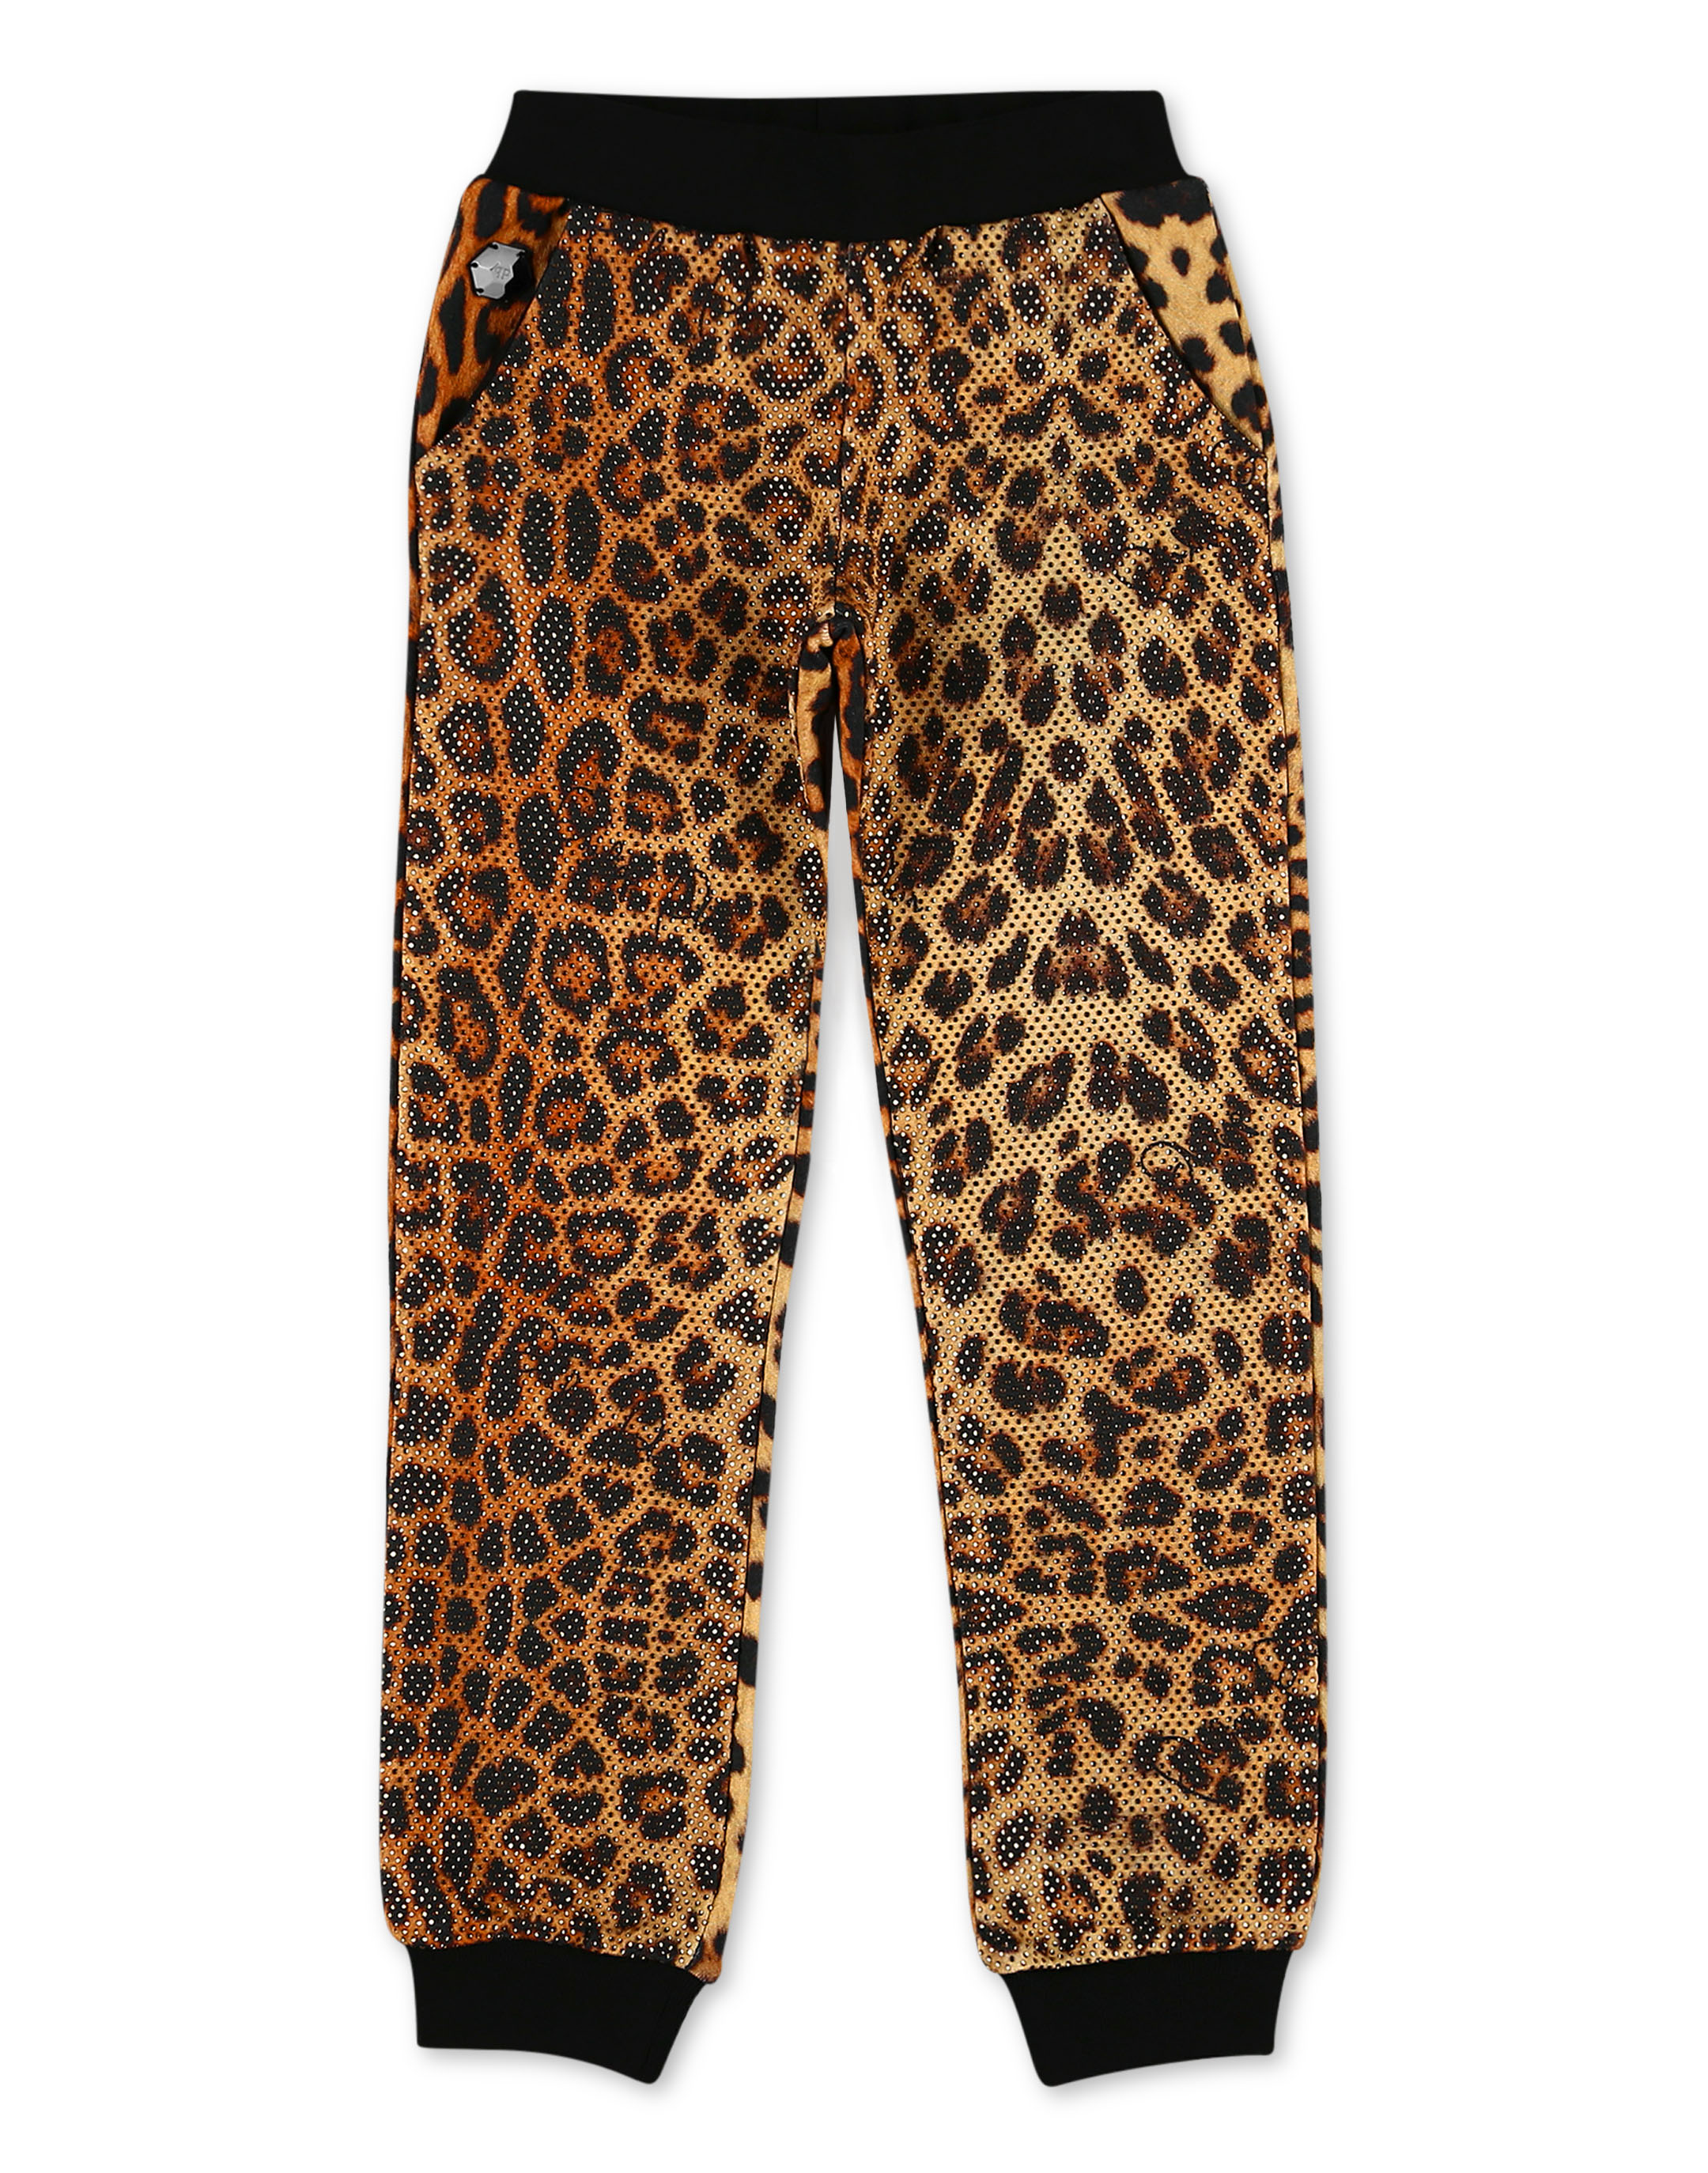 Jogging Trousers Leopard | Philipp Plein Outlet